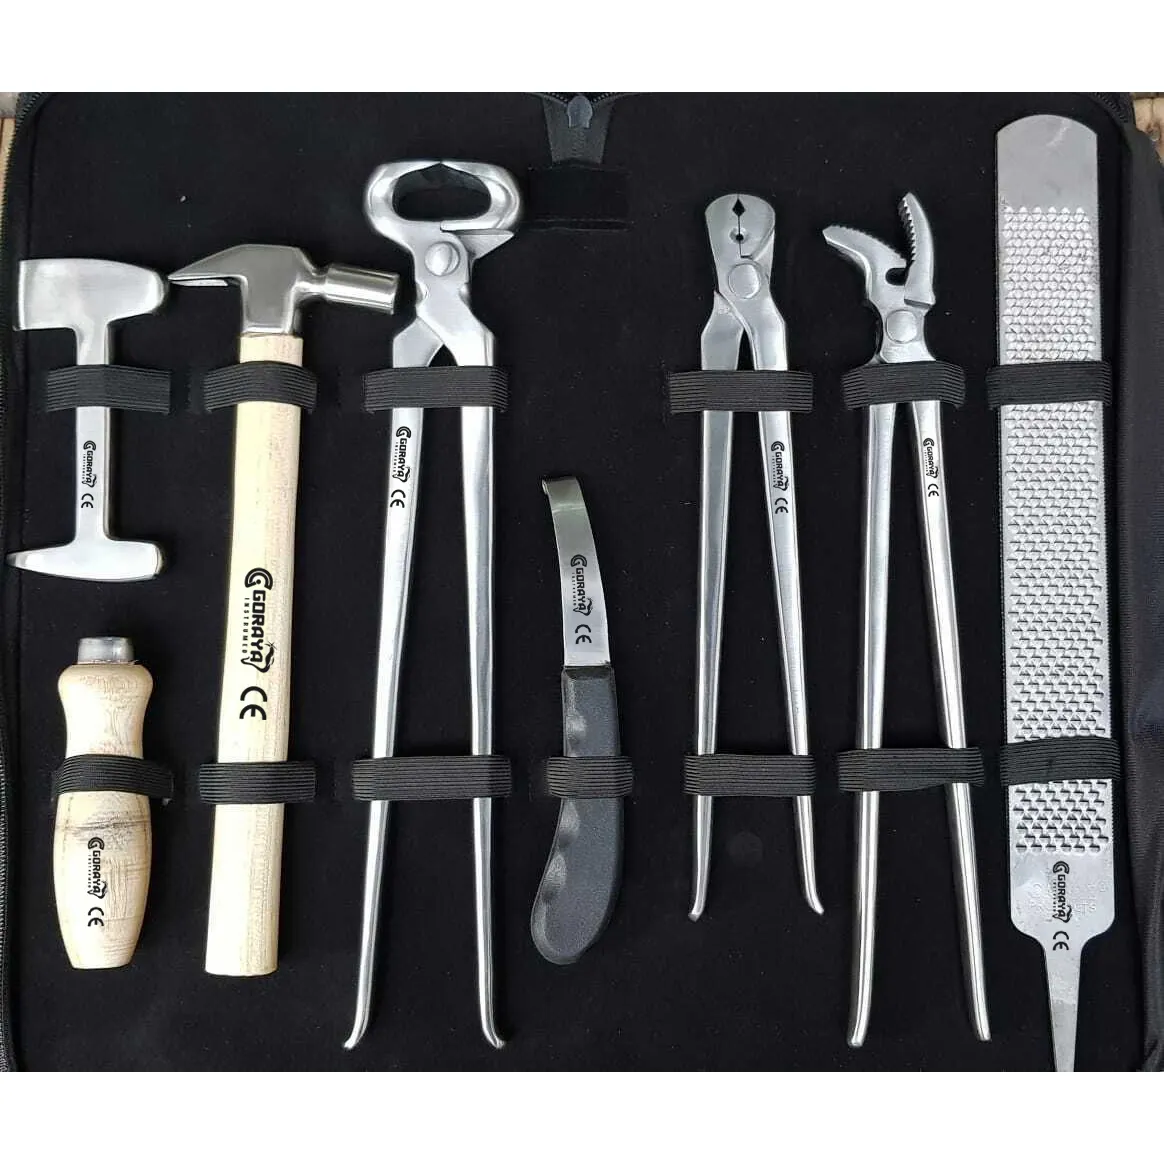 गर्म बिक्री GORAYA जर्मन हार्स Farrier उपकरण इक्वाइन देखभाल उपकरण किट खुर जापानी चाकू सीई आईएसओ मंजूरी दे दी